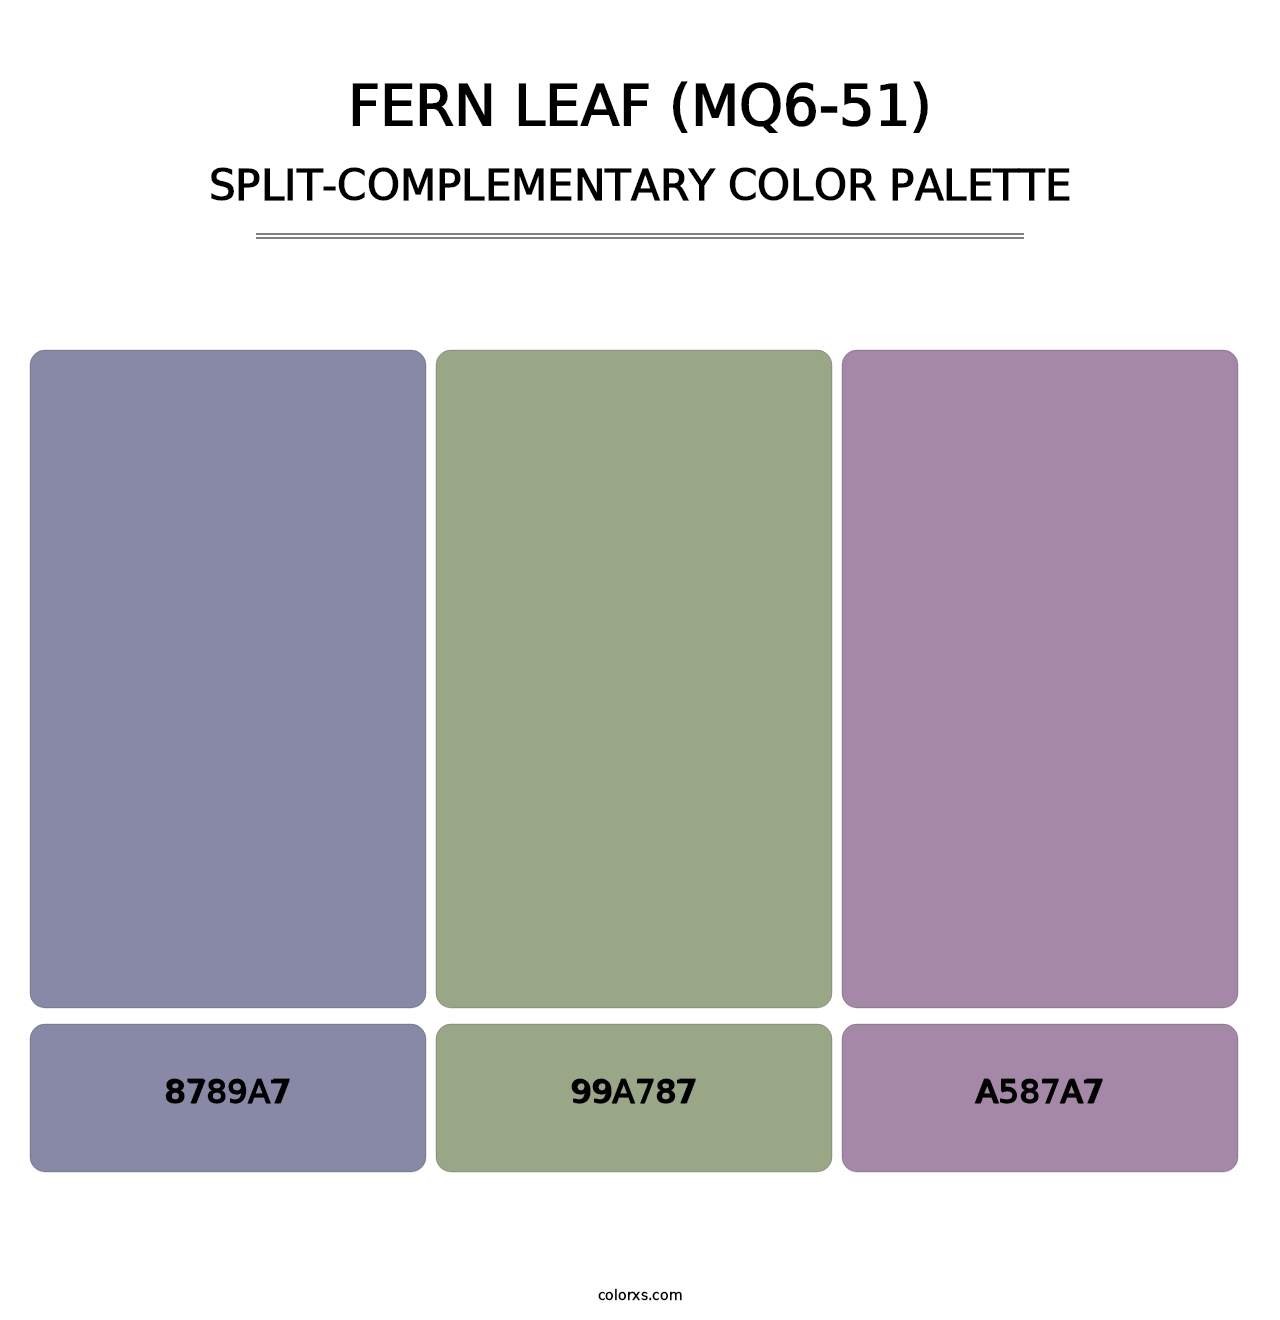 Fern Leaf (MQ6-51) - Split-Complementary Color Palette